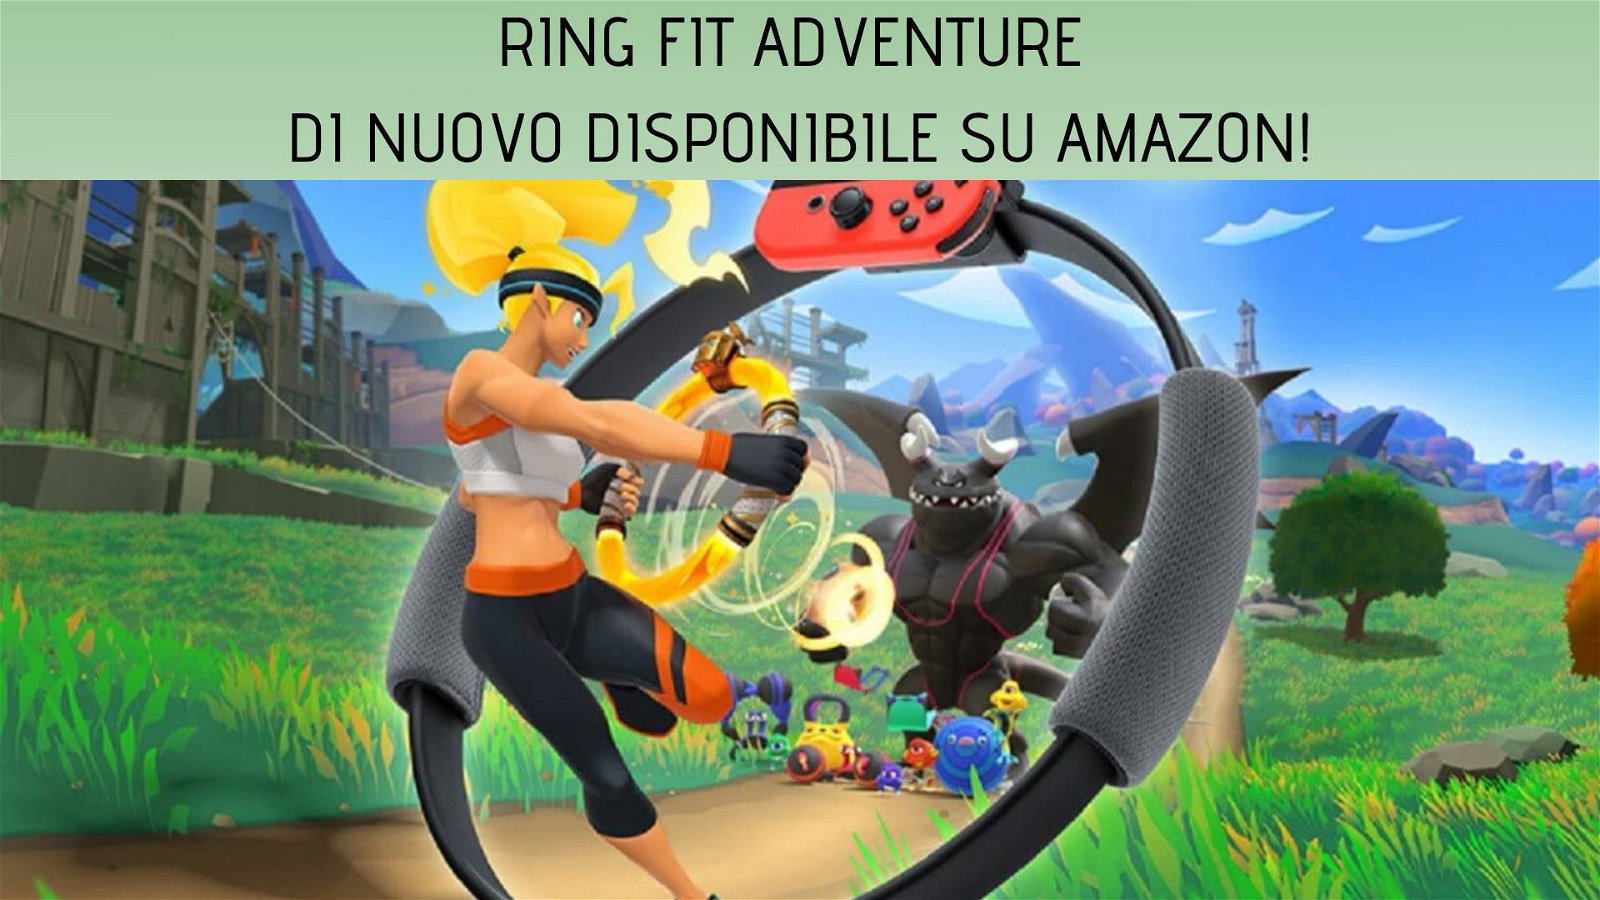 Immagine di Ring Fit Adventure nuovamente disponibile su Amazon ed a prezzo scontato!